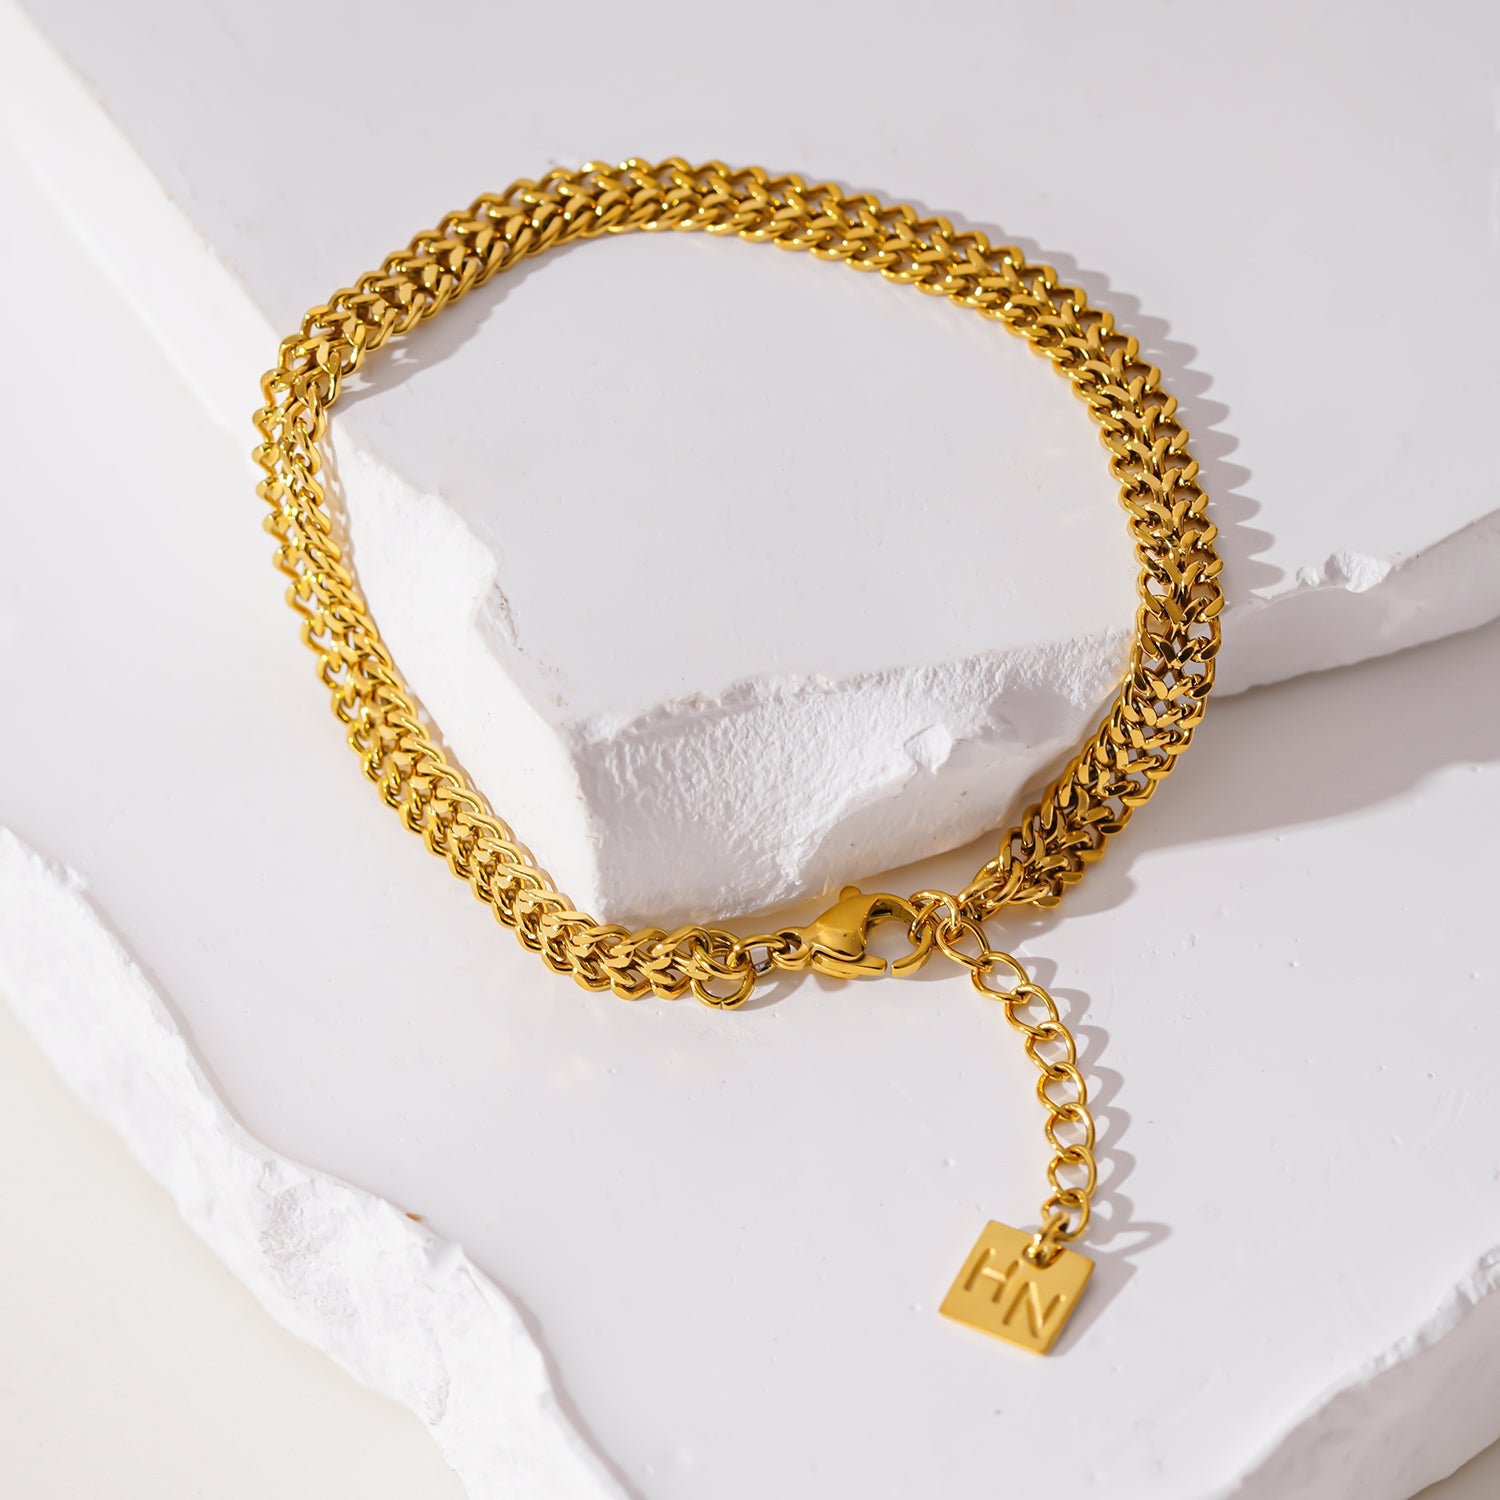 Style BELLAMY 4553: Intricate Wide Width Singular Twin Chain Bracelet.